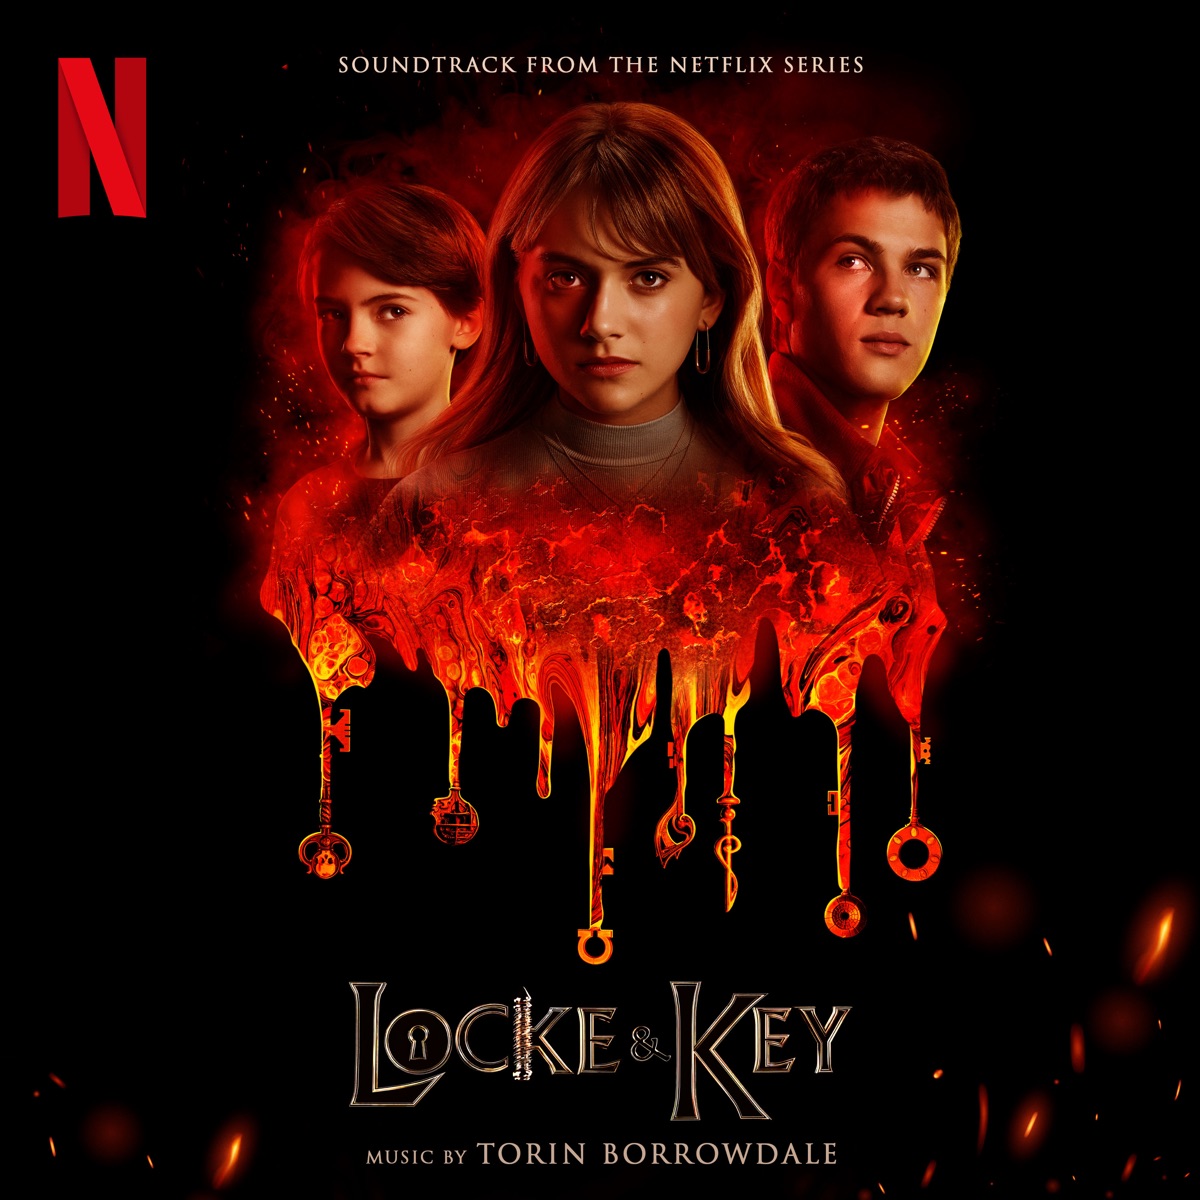 Trilha Sonora Completa de ‘Locke & Key’ 2ª Temporada da Netflix – Escute todas as músicas da série